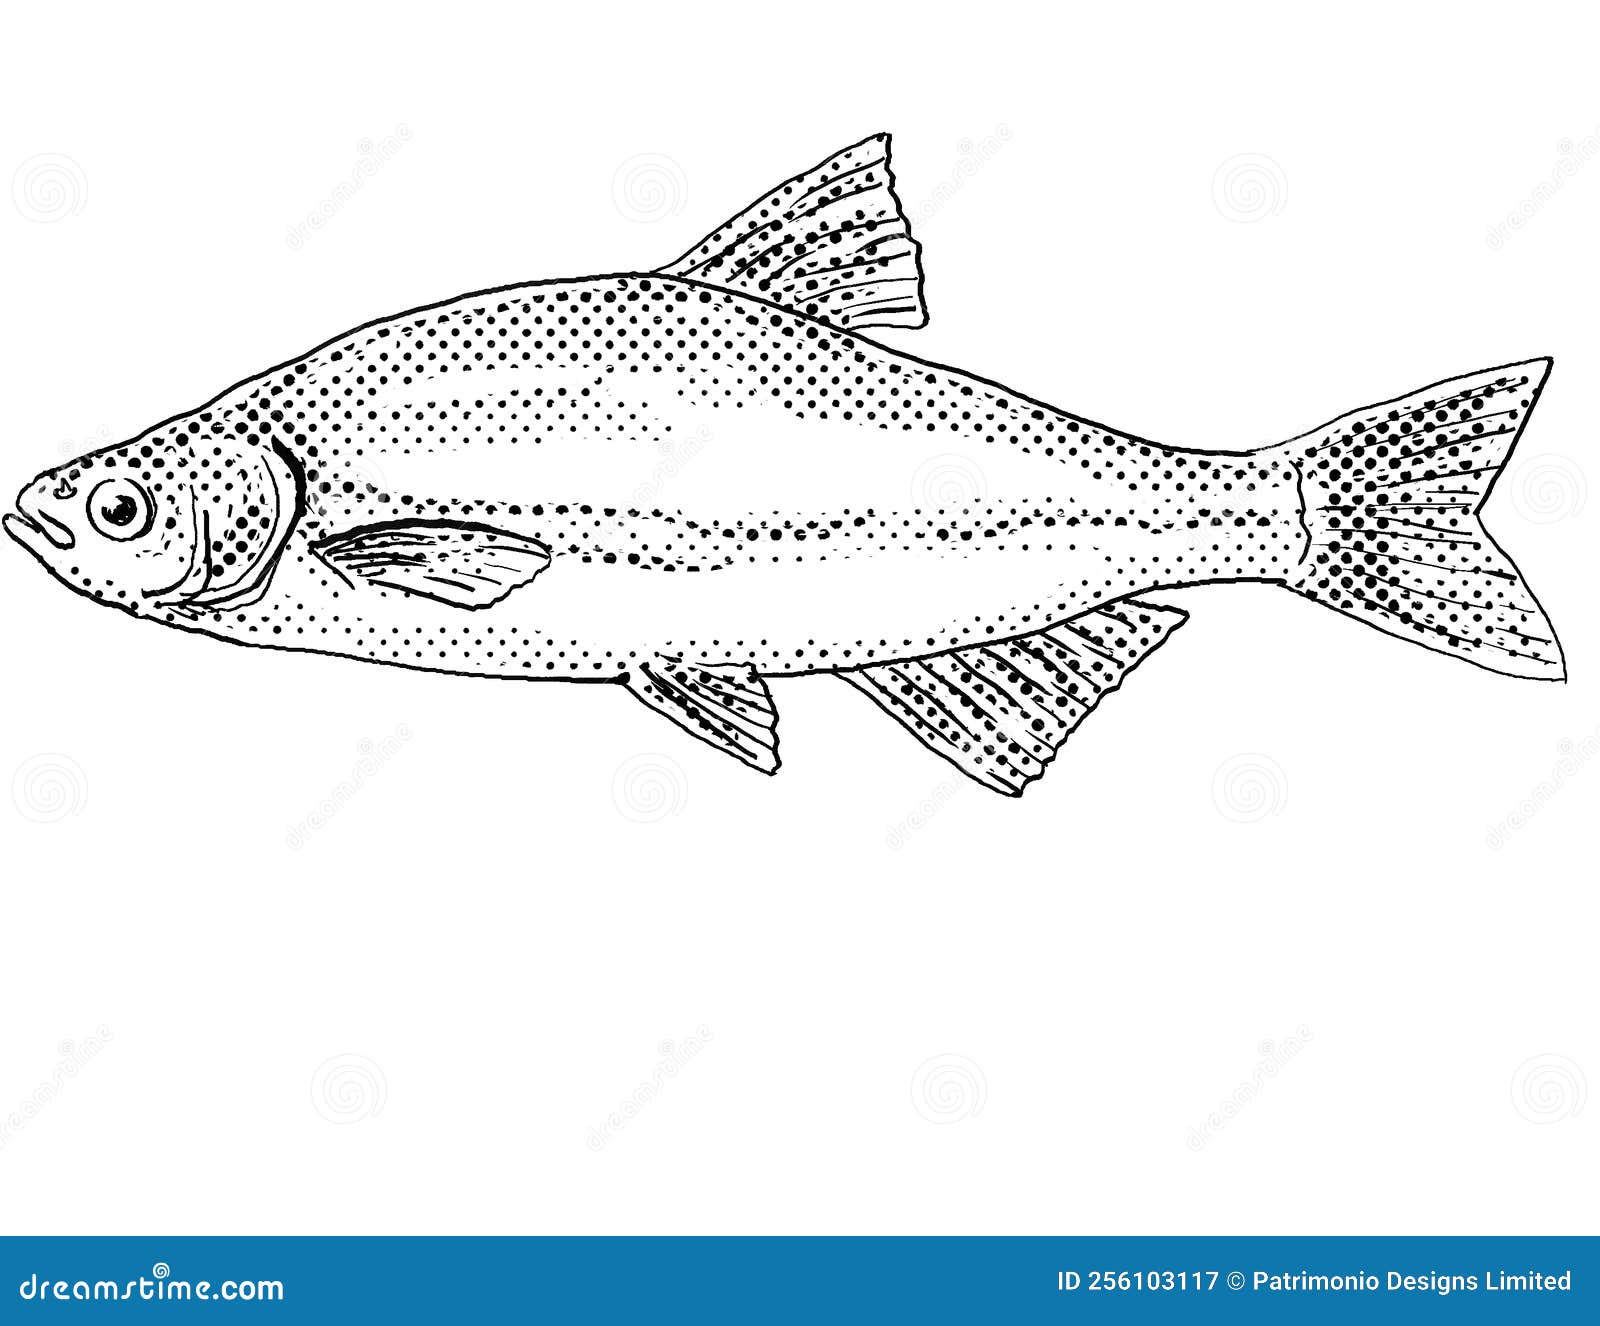 golden shiner or notemigonus crysoleucas freshwater fish cartoon drawing